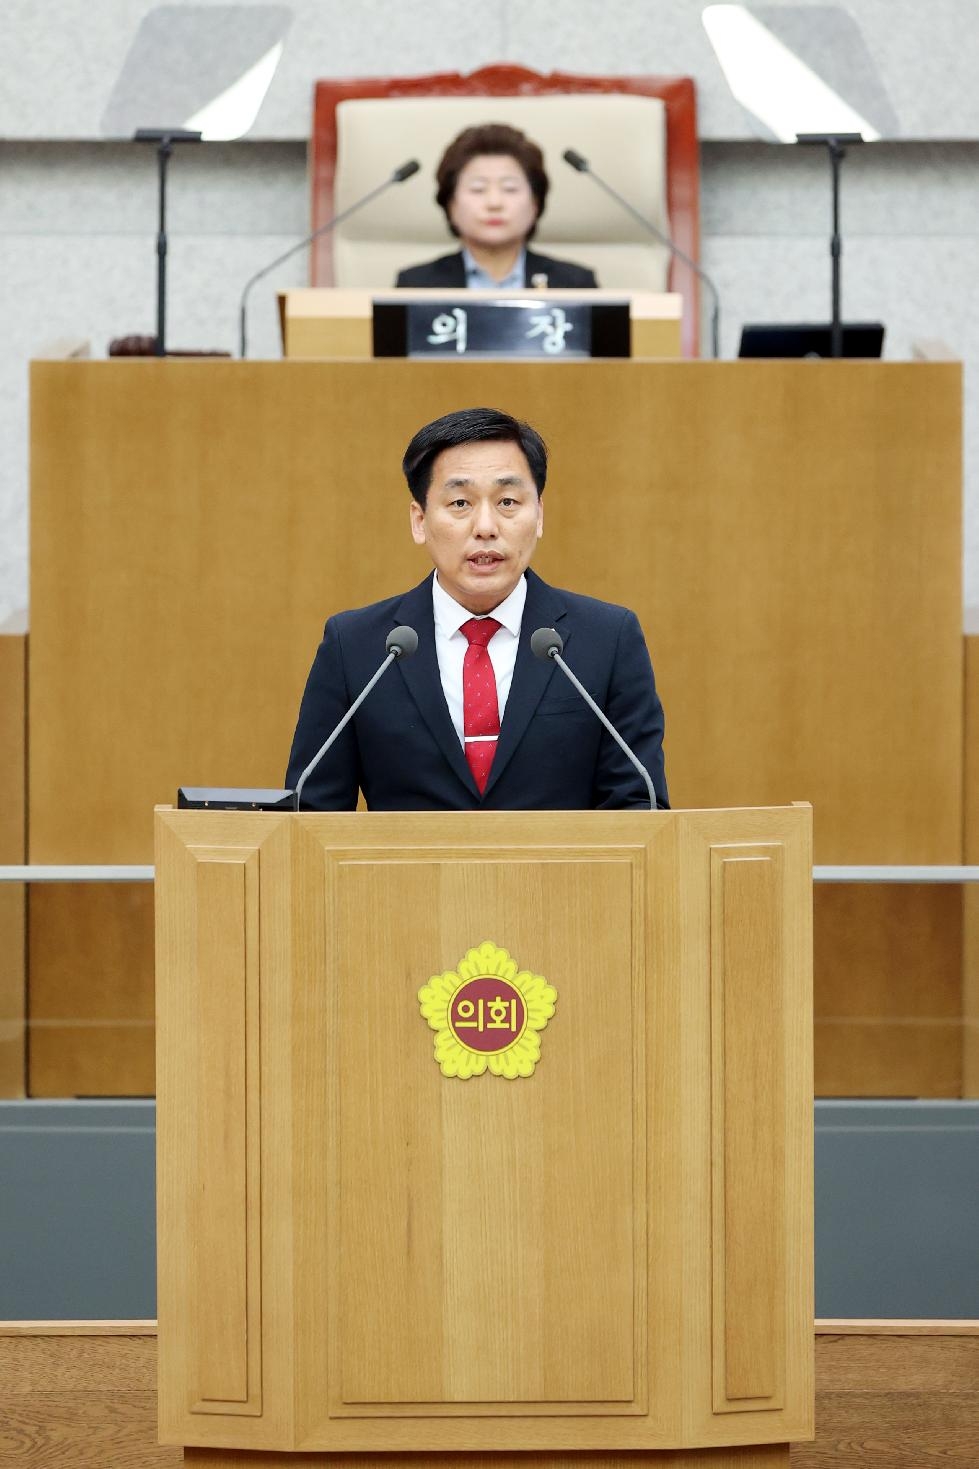 경기도의회 이은주 의원, 신설 한강 교량 명칭 ‘구리대교’ 명명 촉구